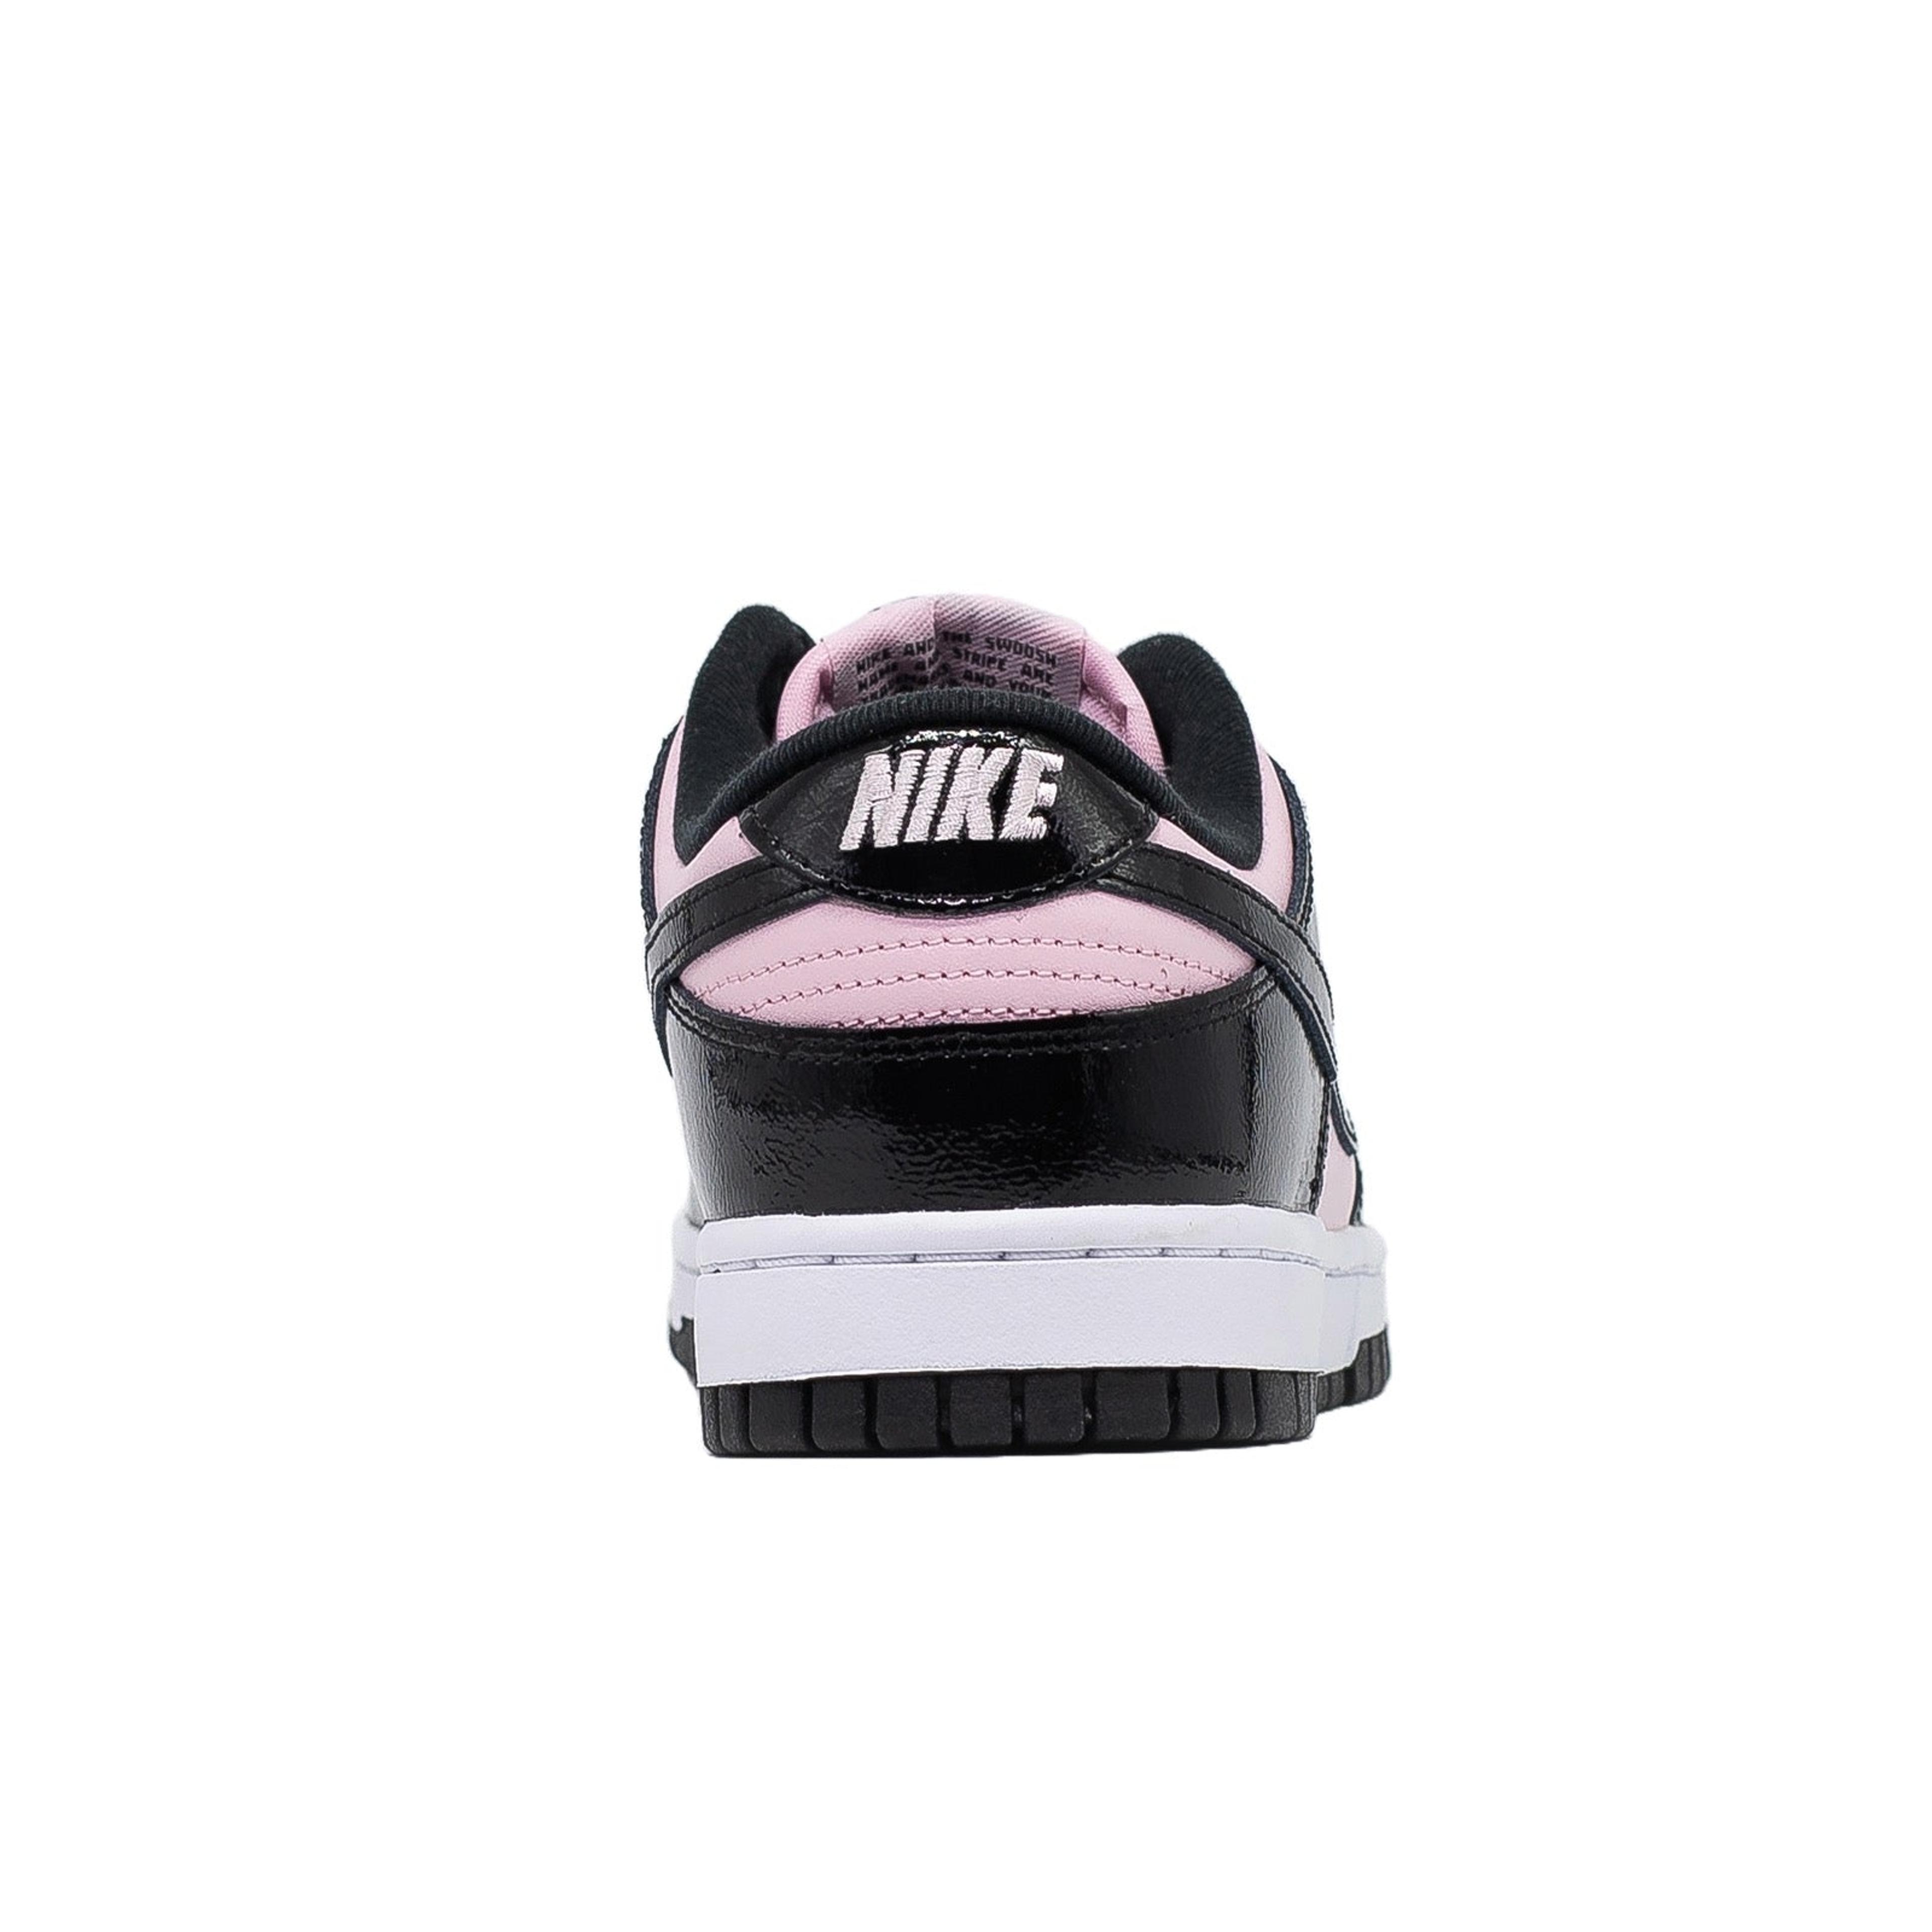 Alternate View 3 of Women's Nike Dunk Low, Pink Foam Black